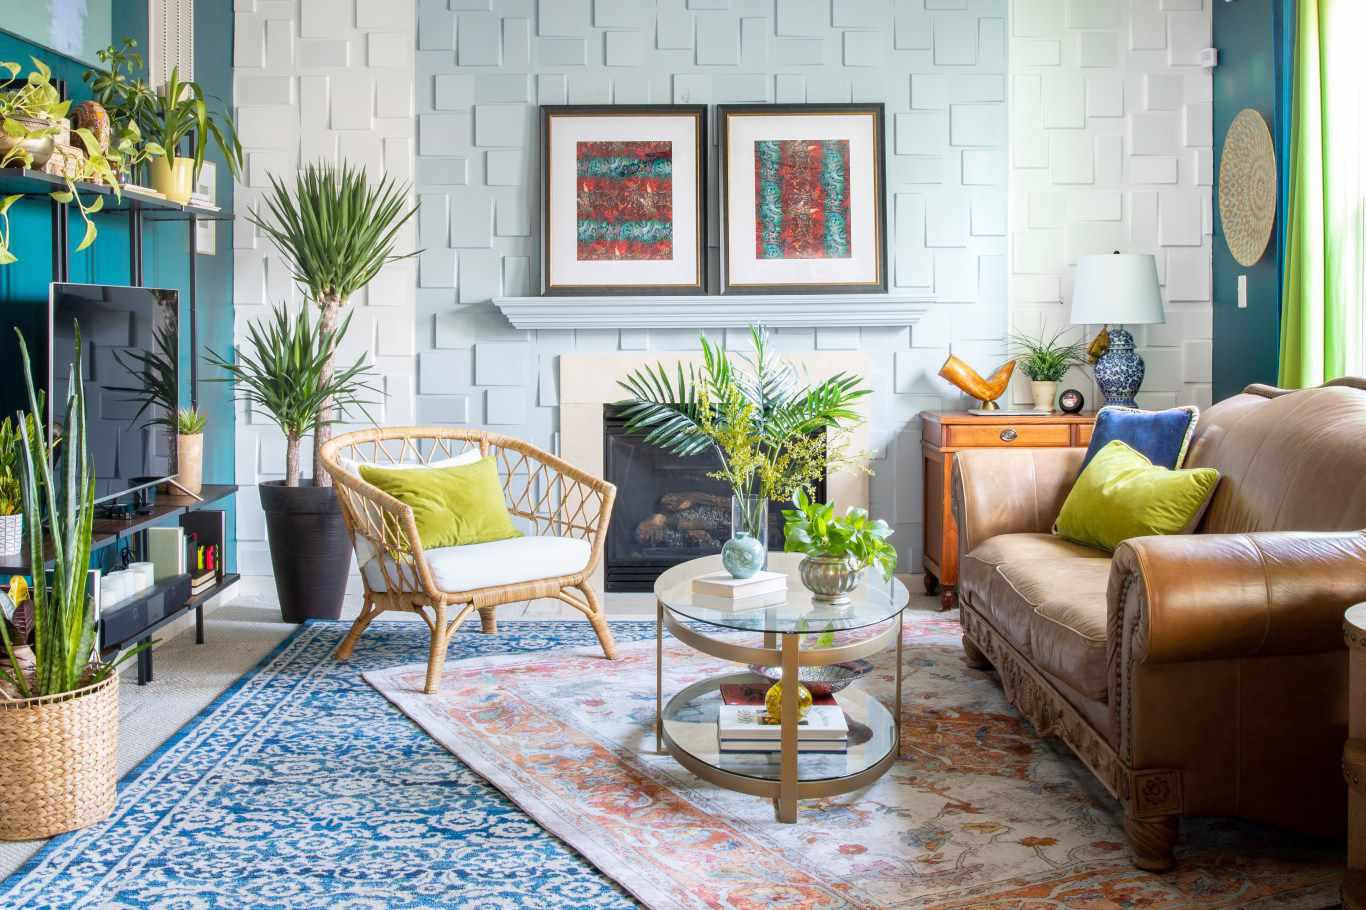 Sala de estar de inspiração litorânea com paredes azul-petróleo, sofá de couro e cadeira de vime